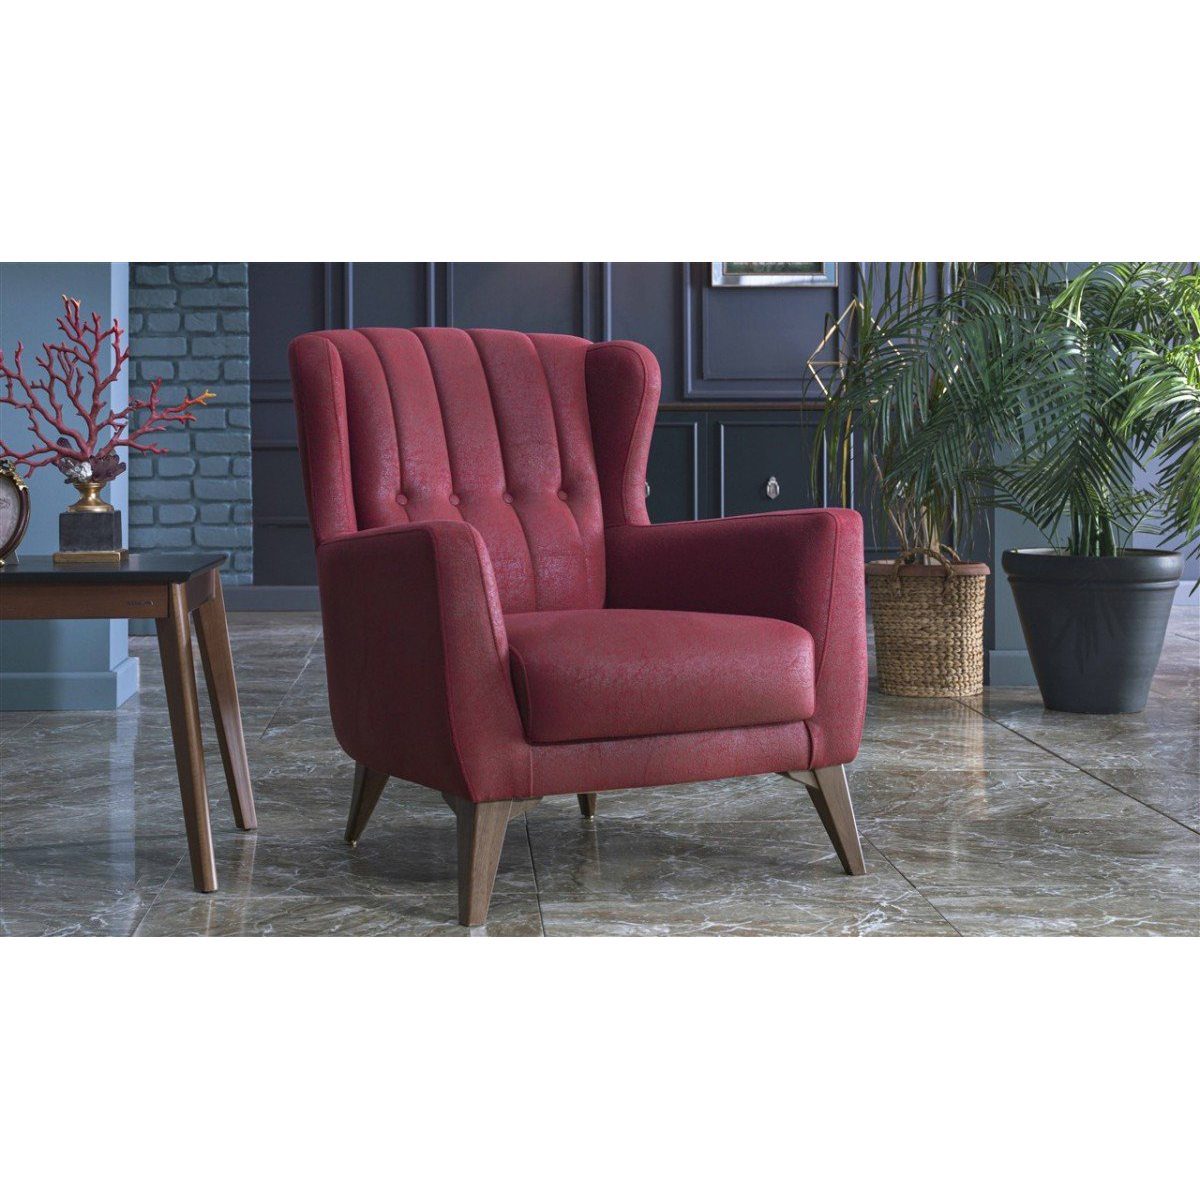 Кресло Bellona Luca, цвет: красный, размер 81х96х92 см (LUCA-01)LUCA-01